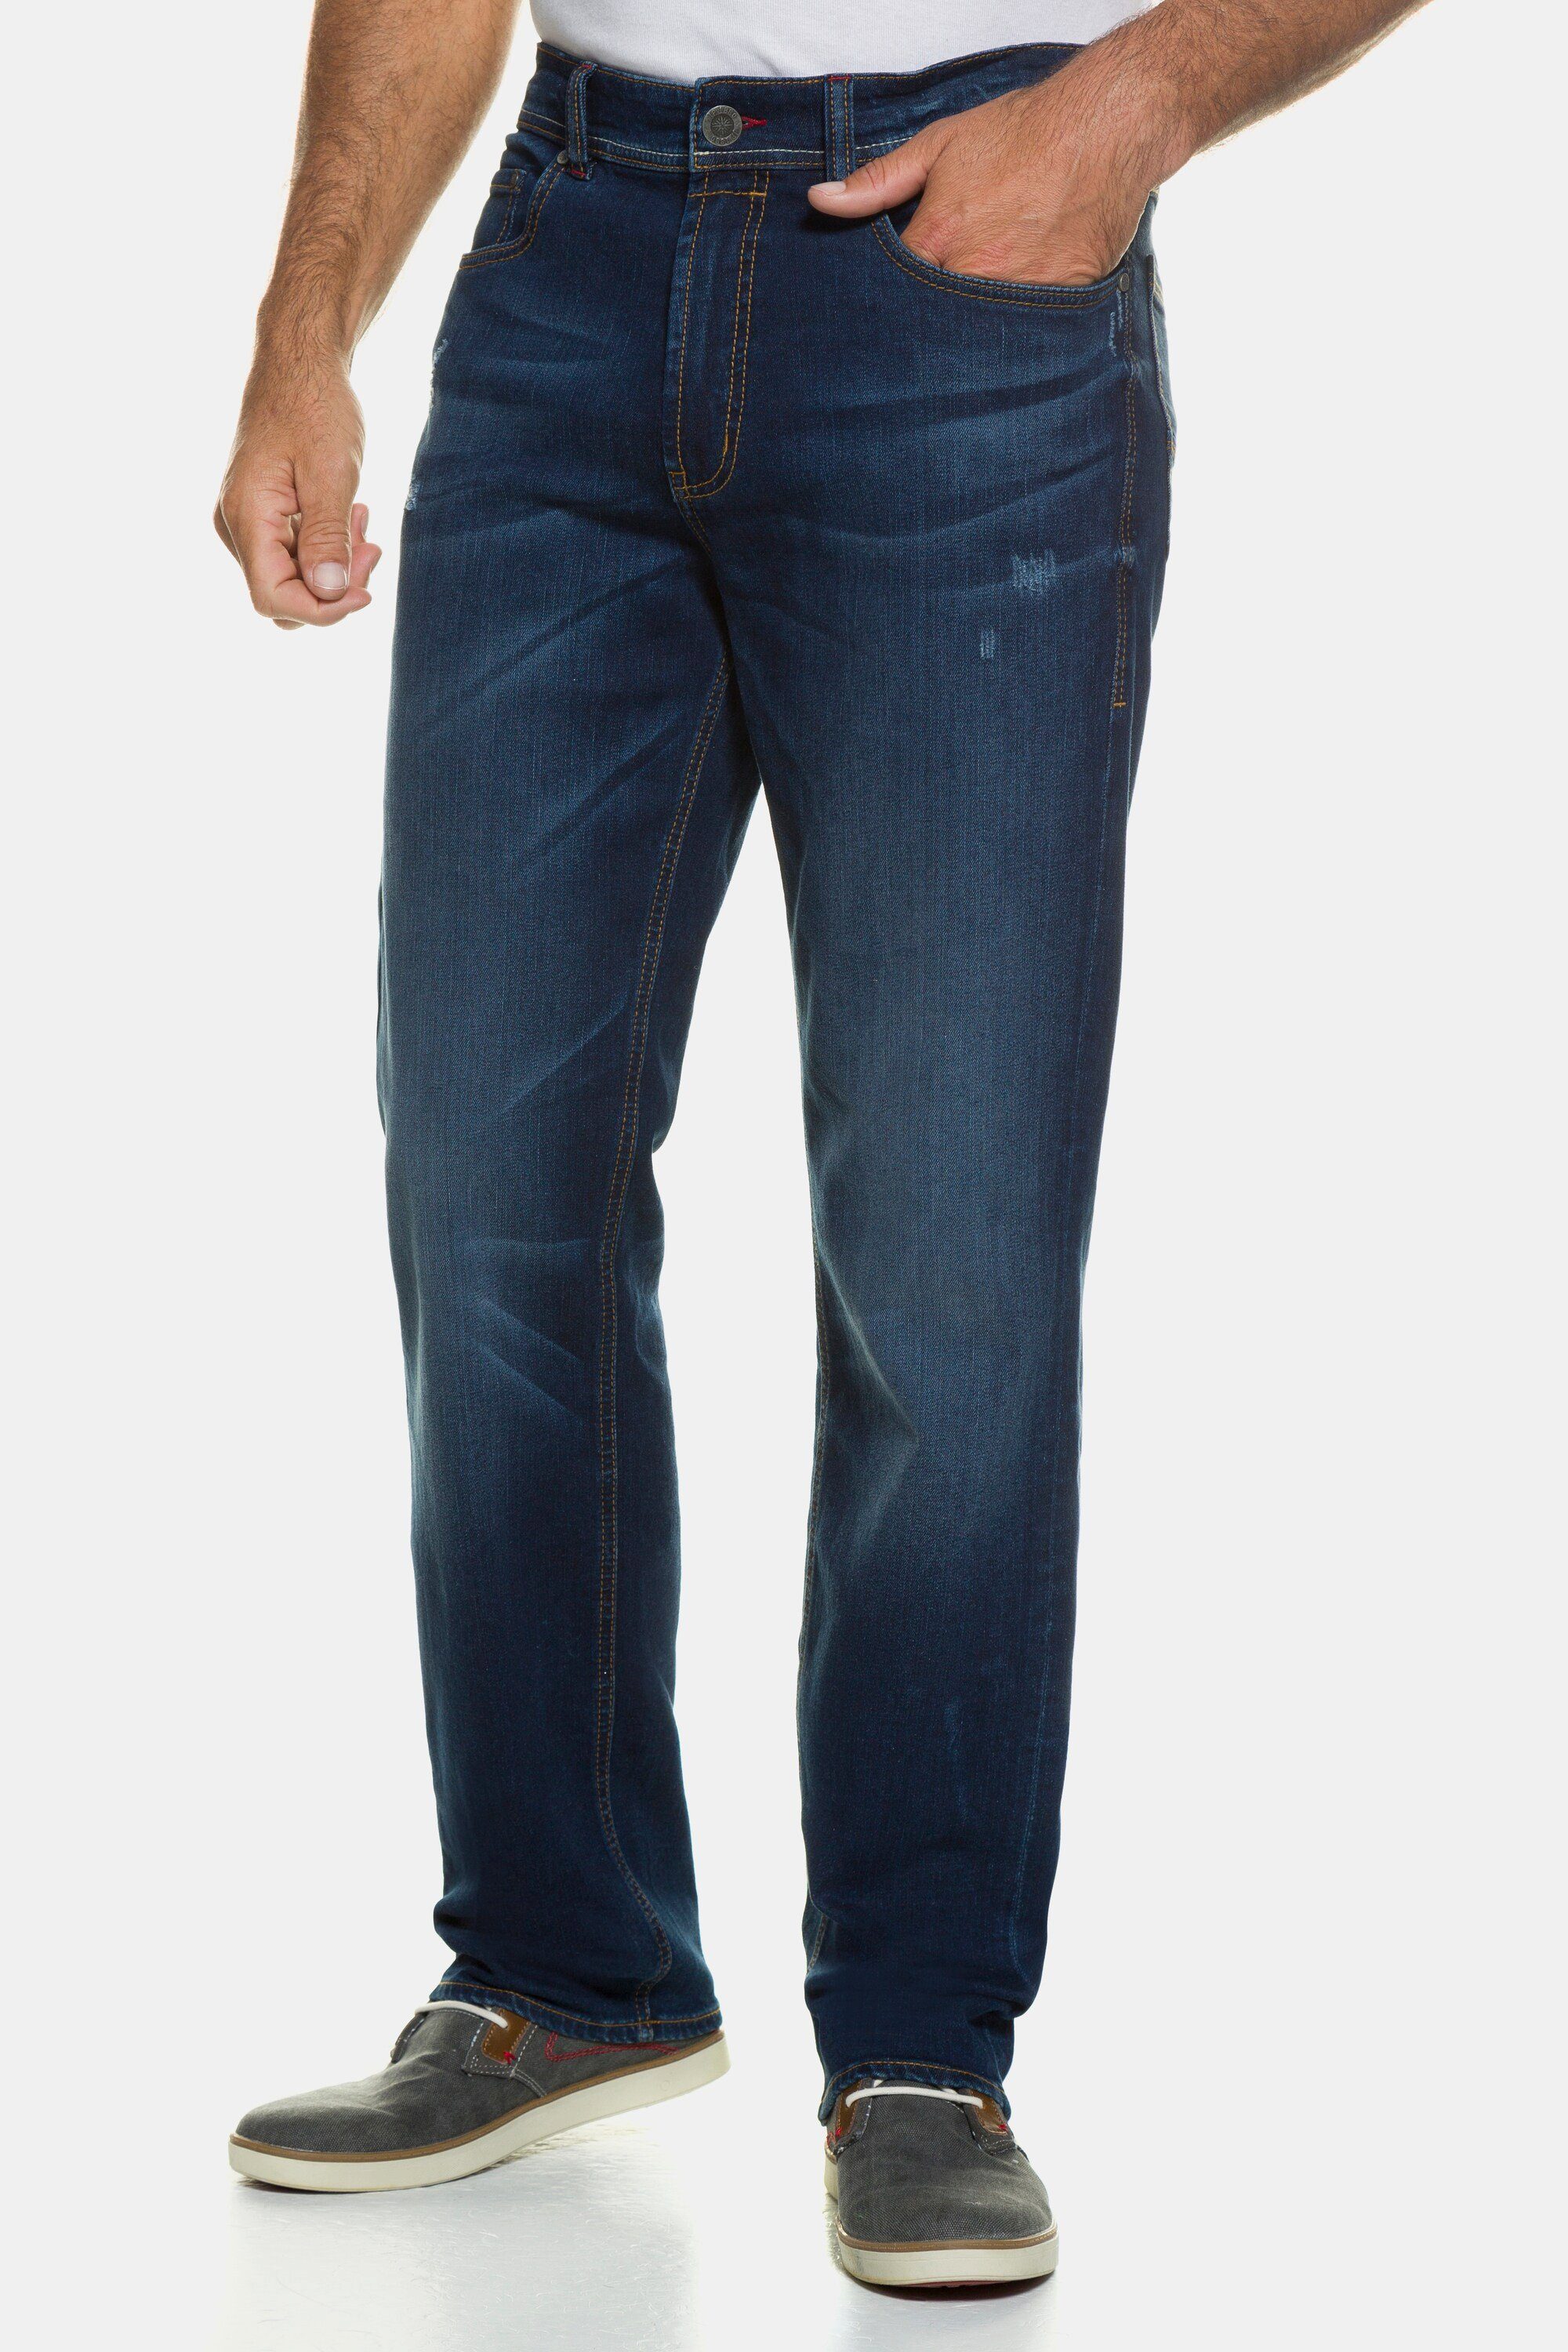 JP1880 5-Pocket-Jeans 70/35 Gr. Jeans Straight denim bis Fit Denim blue dark FLEXNAMIC®